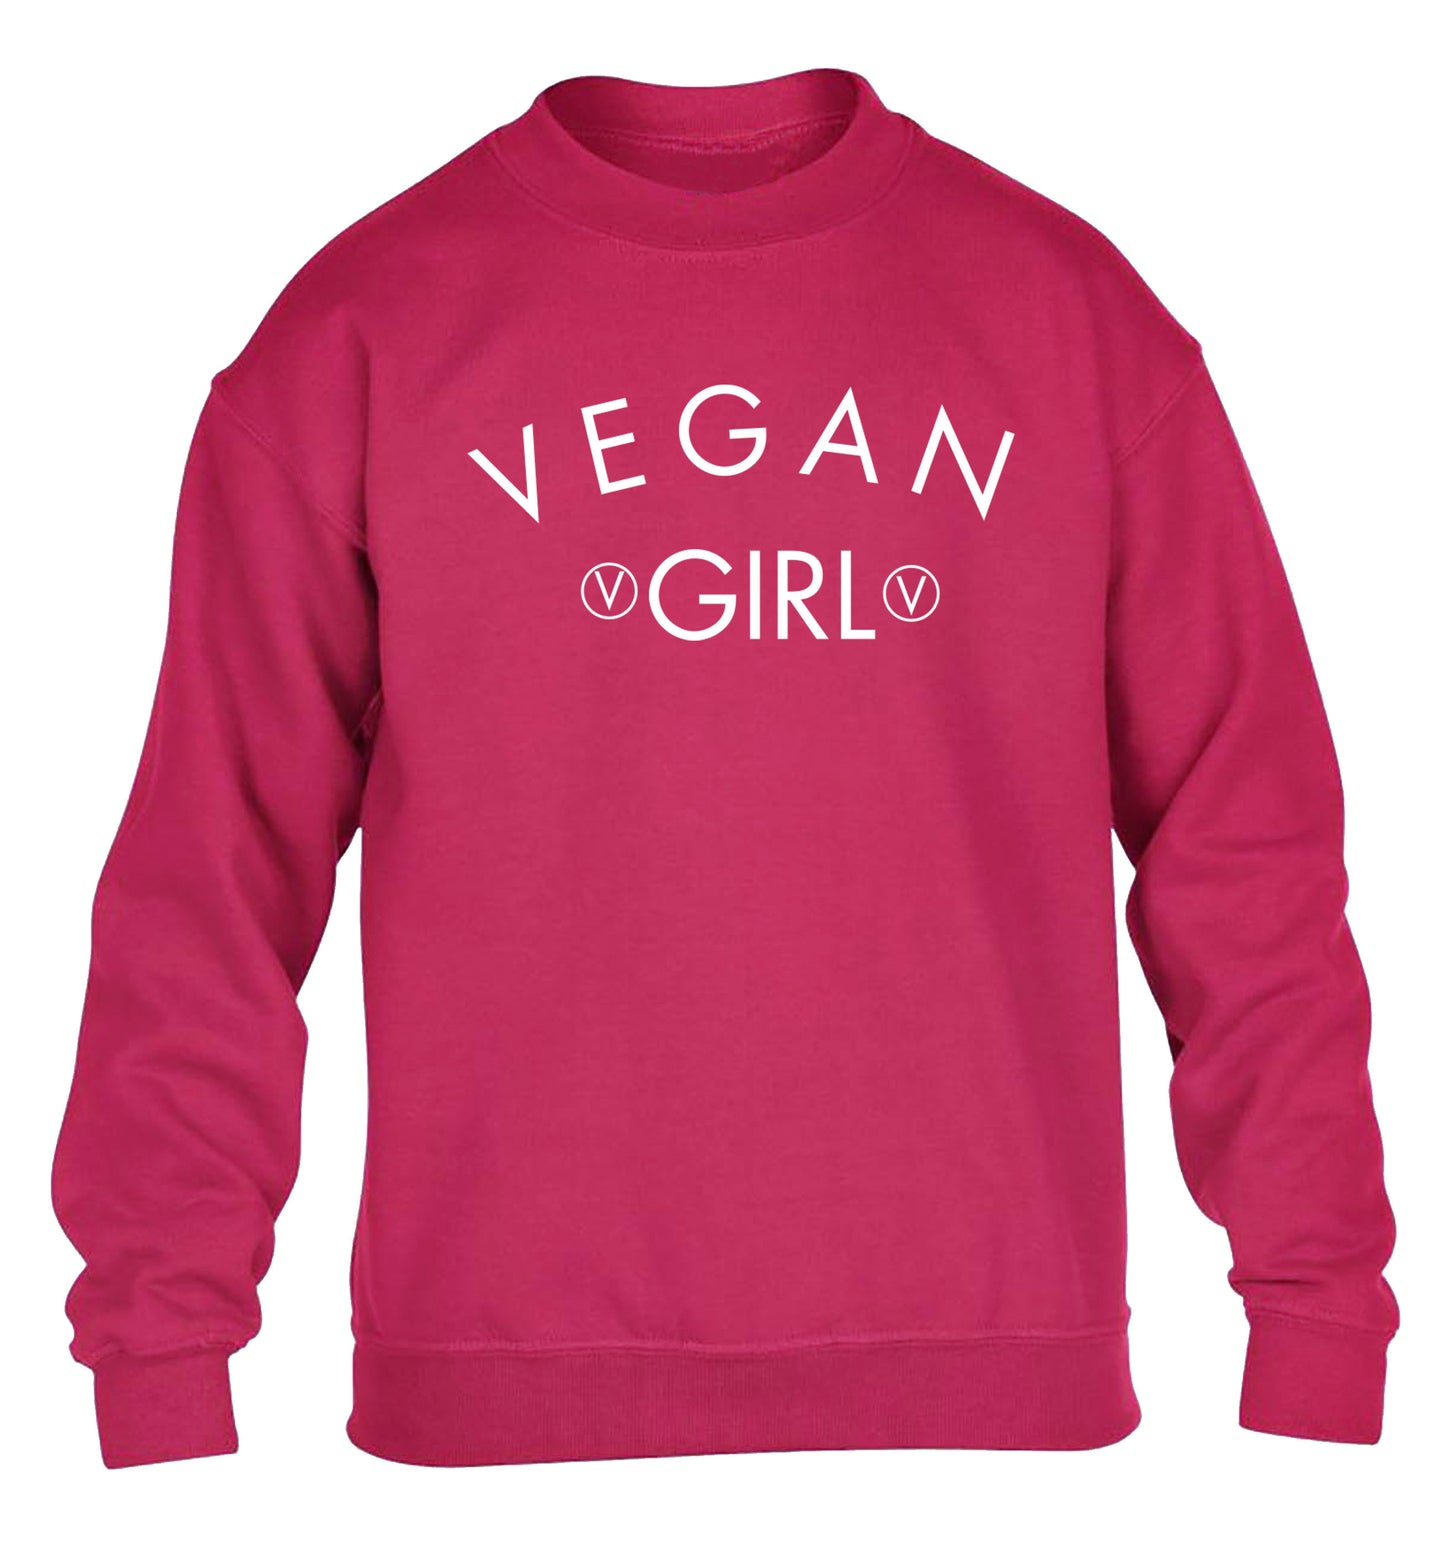 Vegan girl children's pink sweater 12-14 Years